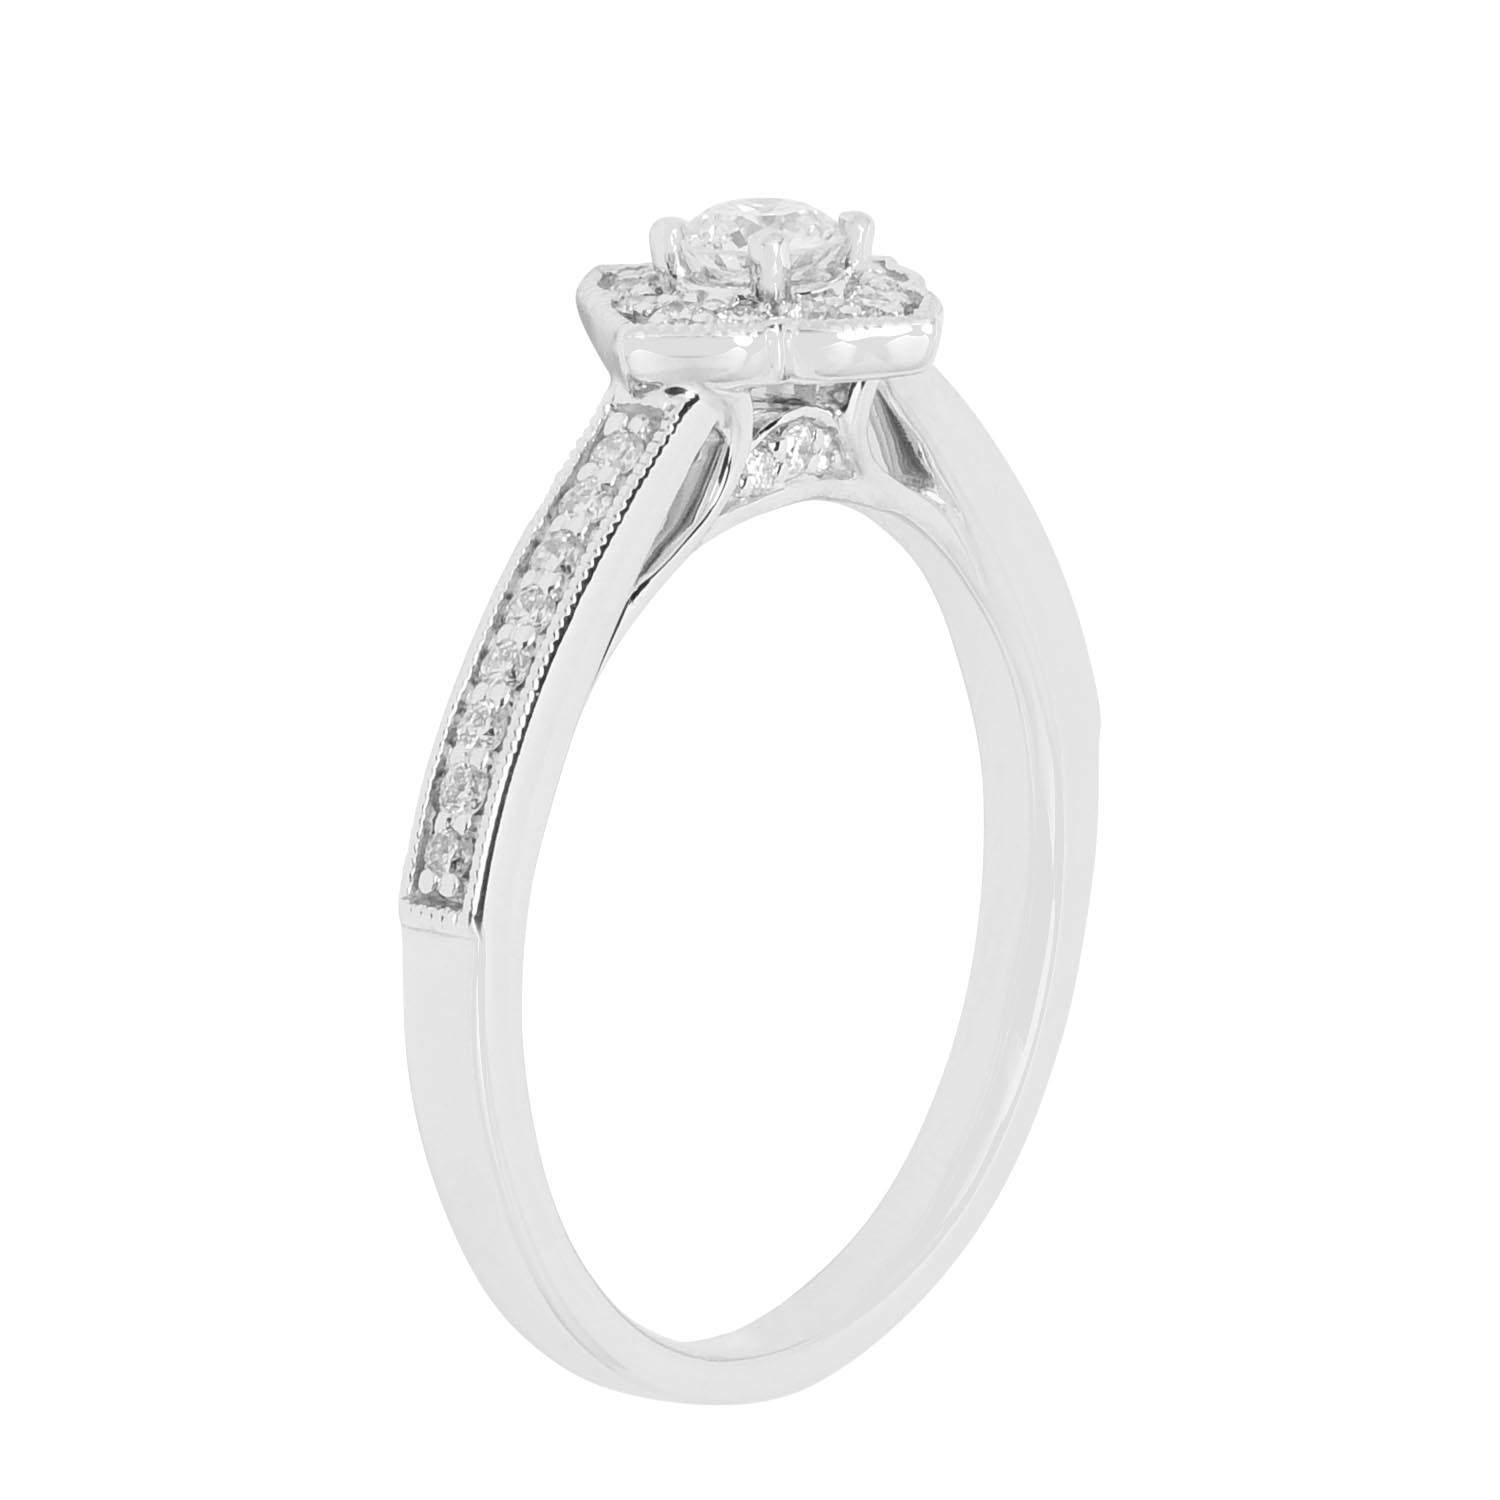 Diamond Ring with Three Diamond Side Stones | Dalgleish Diamonds »  Dalgleish Diamonds